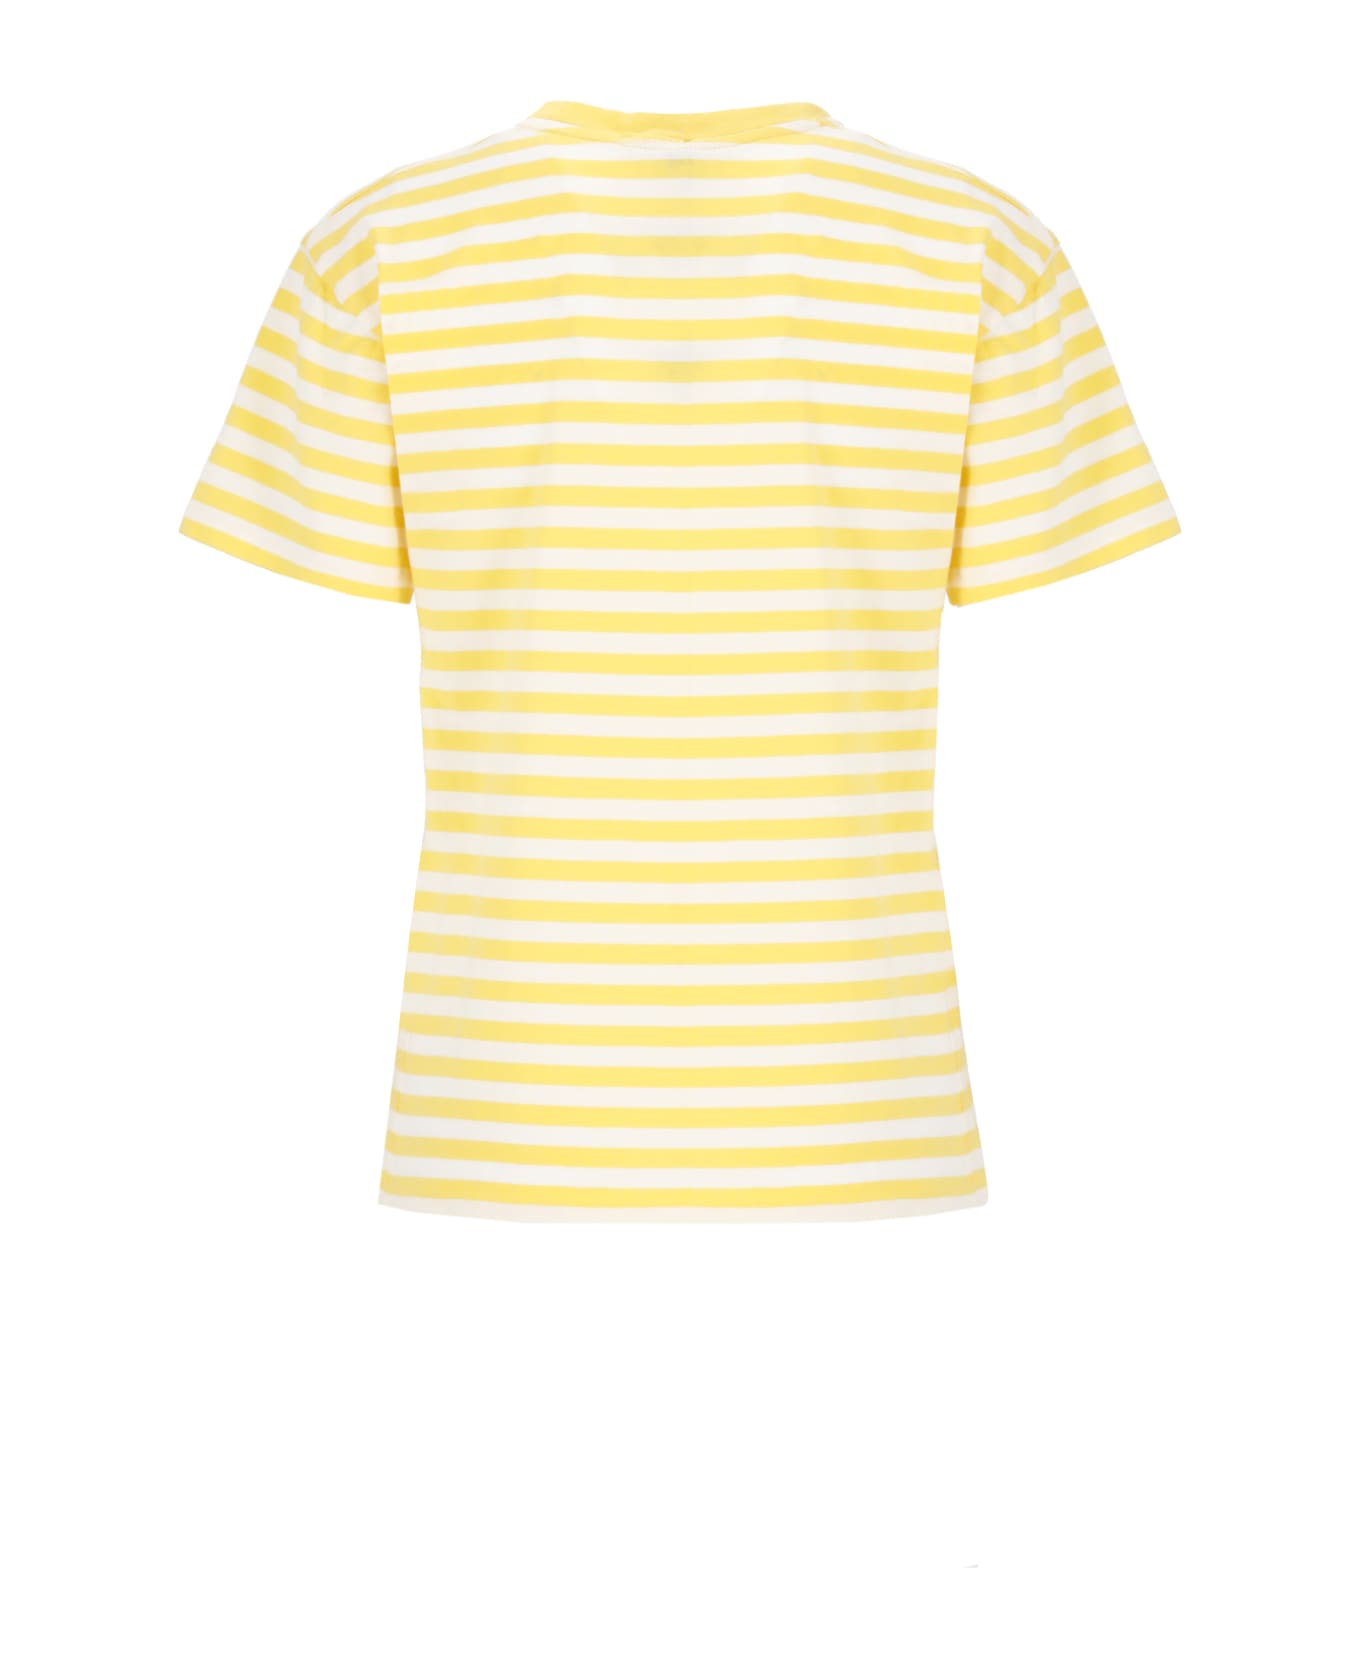 Ralph Lauren Pony T-shirt - Yellow Tシャツ